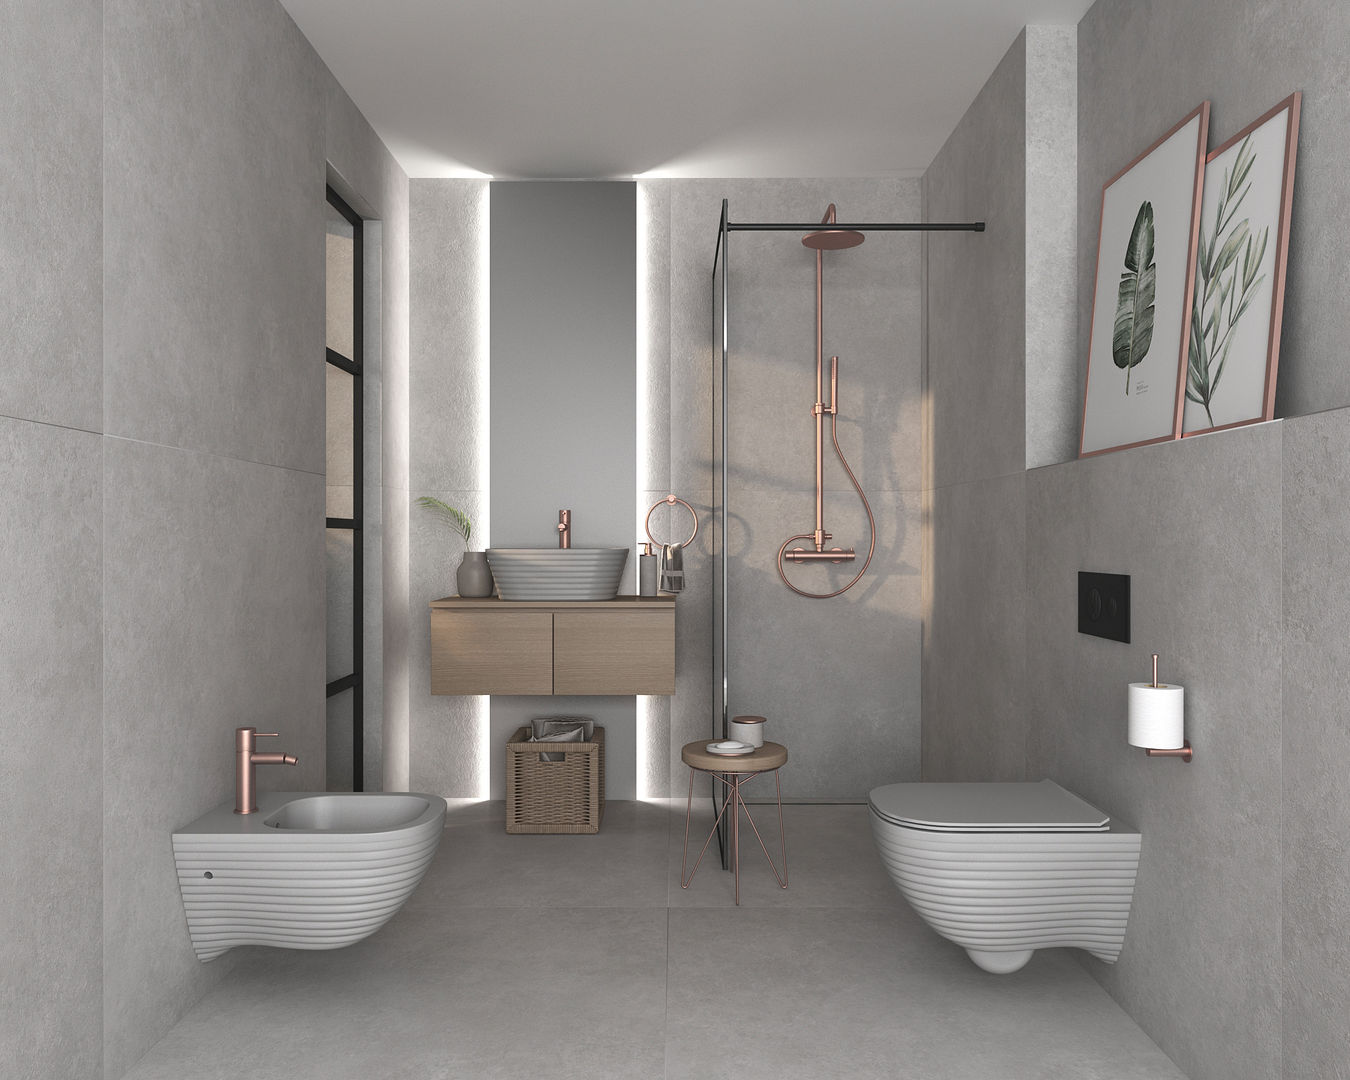 Casa de banho com acabamento mate, Smile Bath S.A. Smile Bath S.A. Ванная комната в стиле модерн Керамика